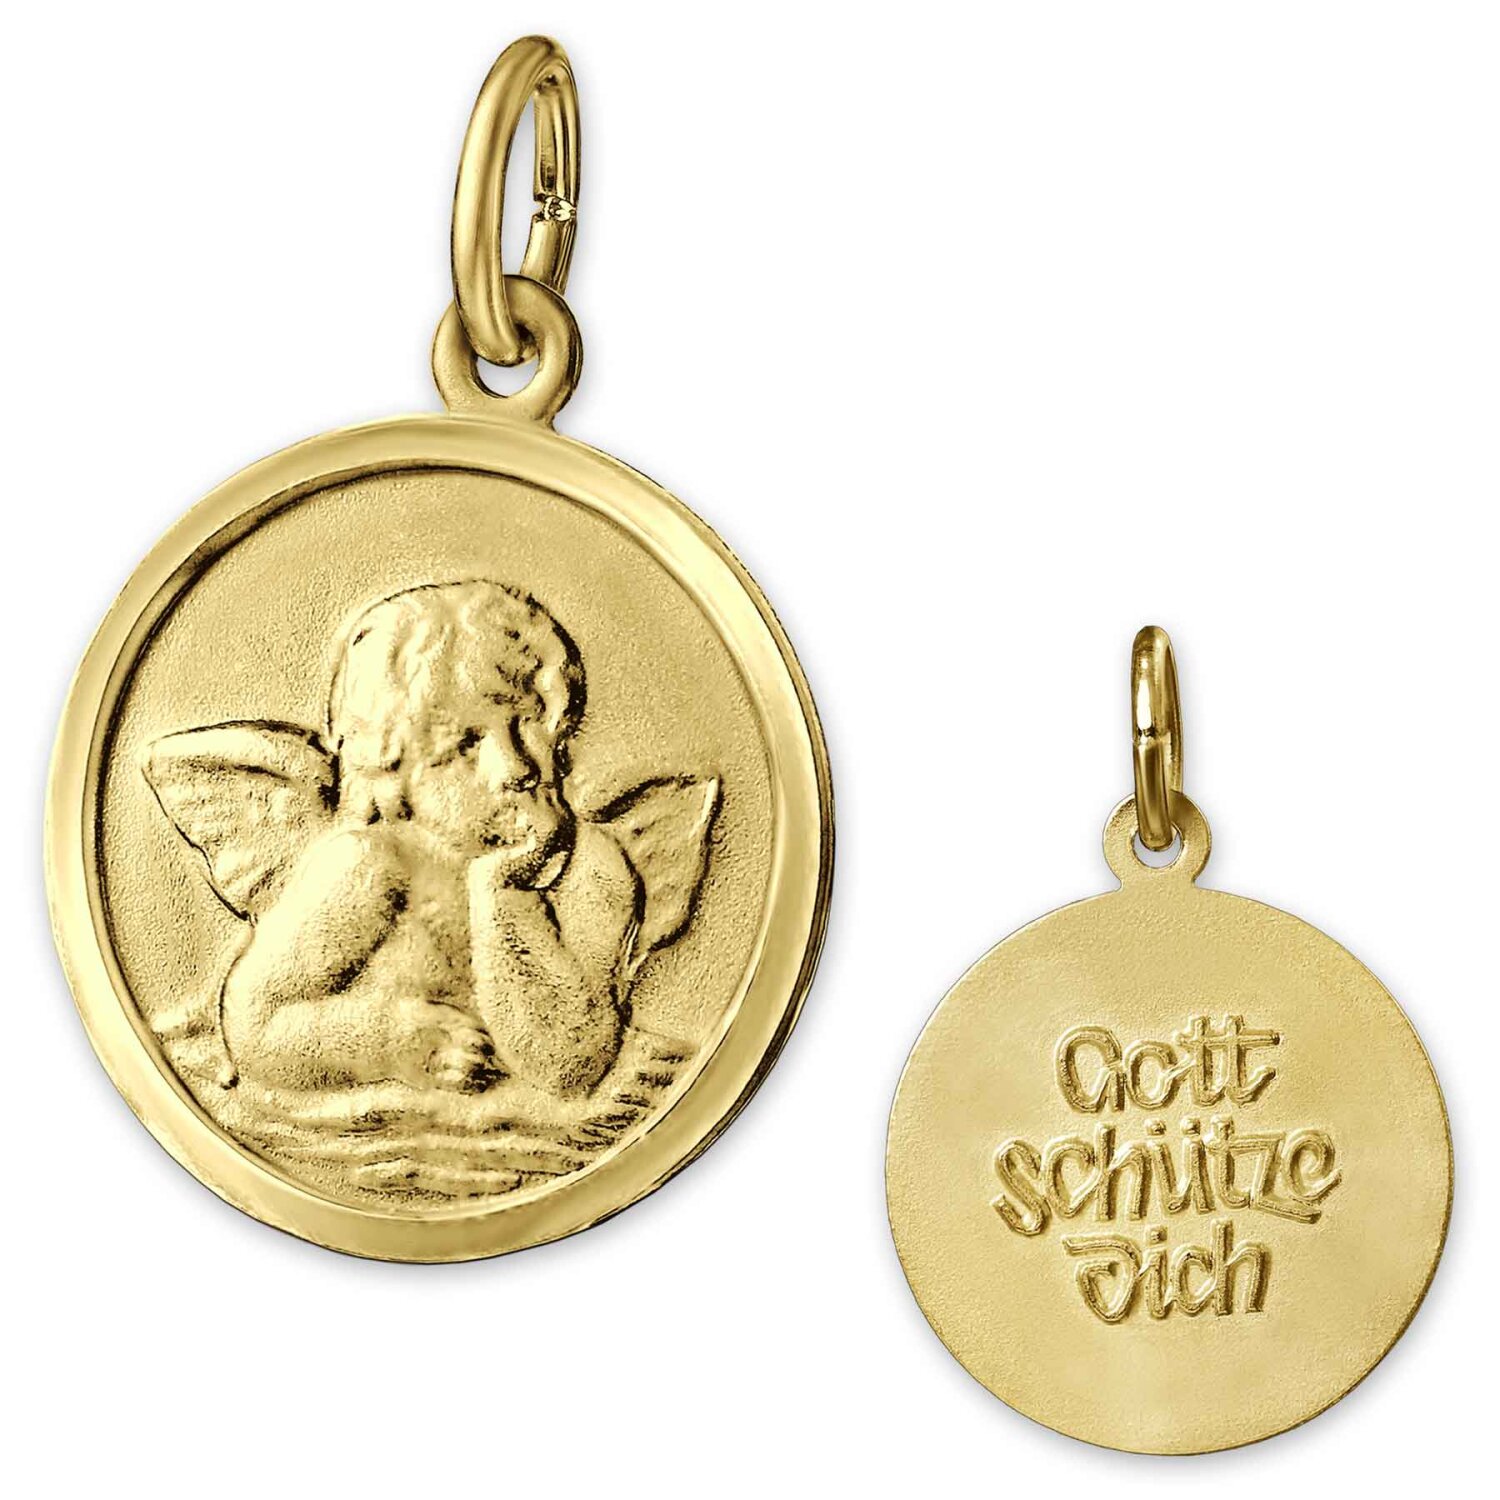 Goldener Engel &Oslash; 14 mm matt hinten mit Gott sch&uuml;tze Dich 333 GOLD 8 KARAT